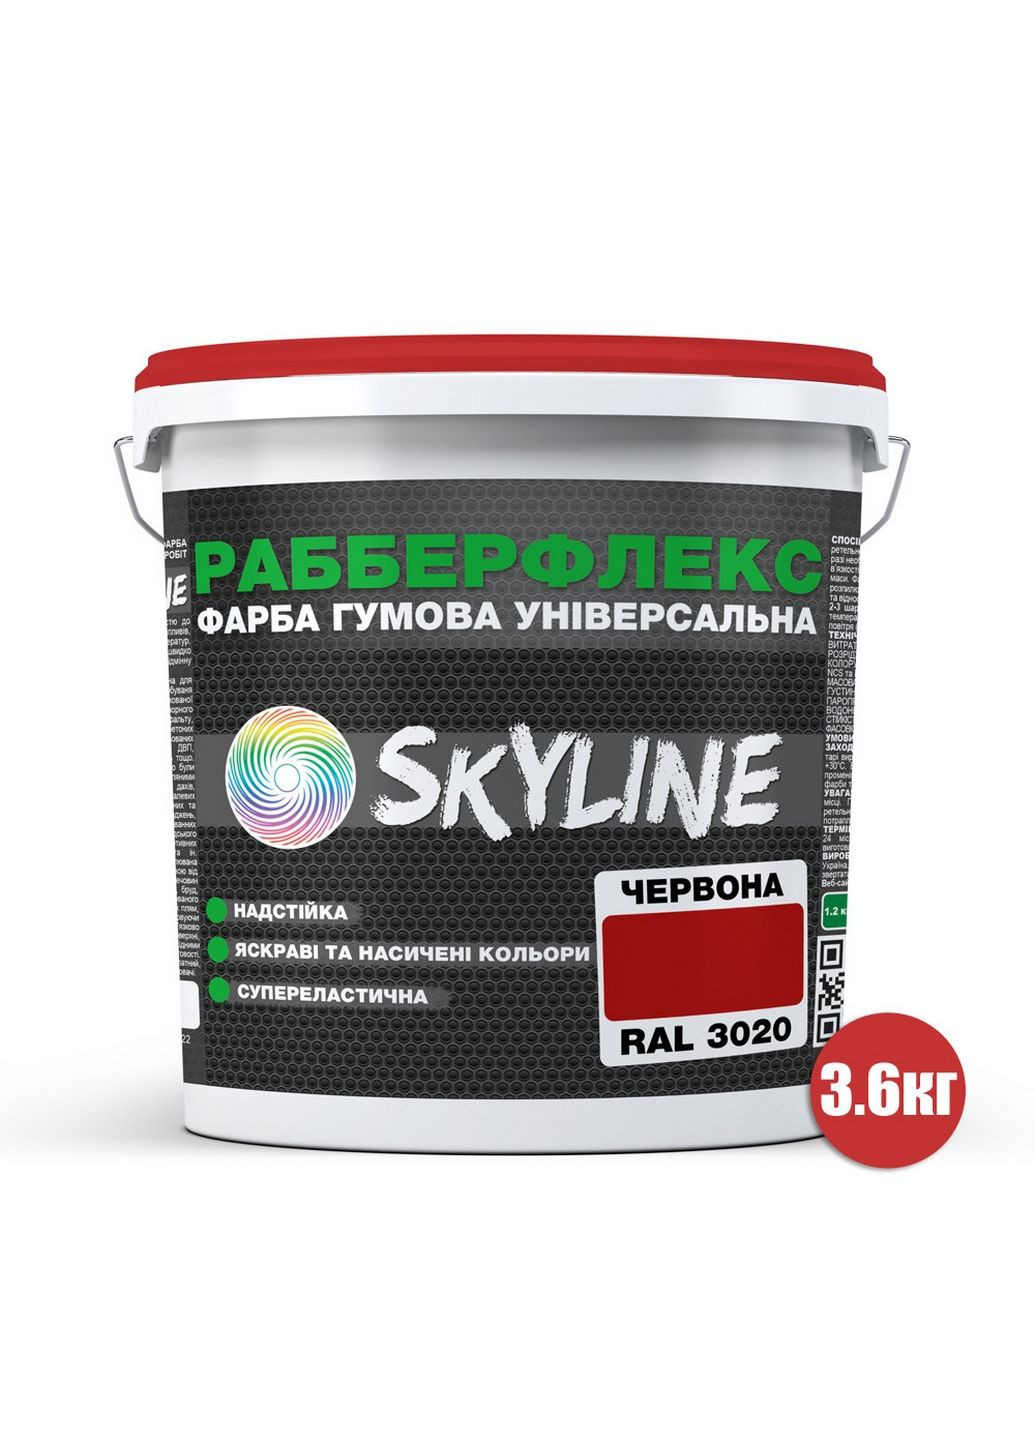 Надстійка фарба гумова супереластична «РабберФлекс» 3,6 кг SkyLine (289366656)